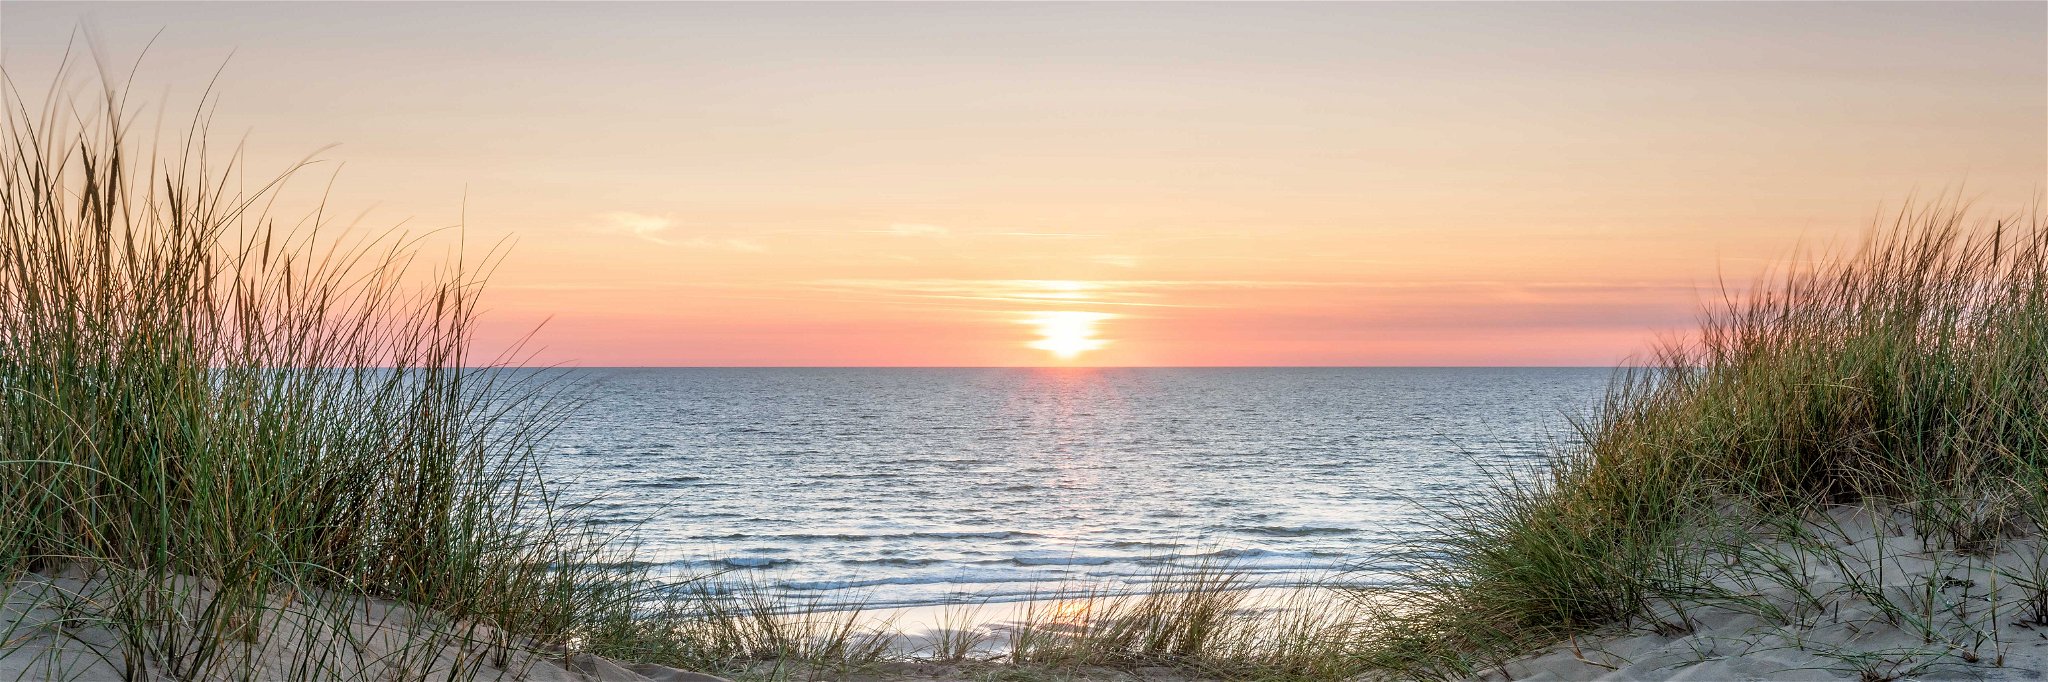 Die Nordsee bietet unzählige Optionen für einen schönen Urlaub.